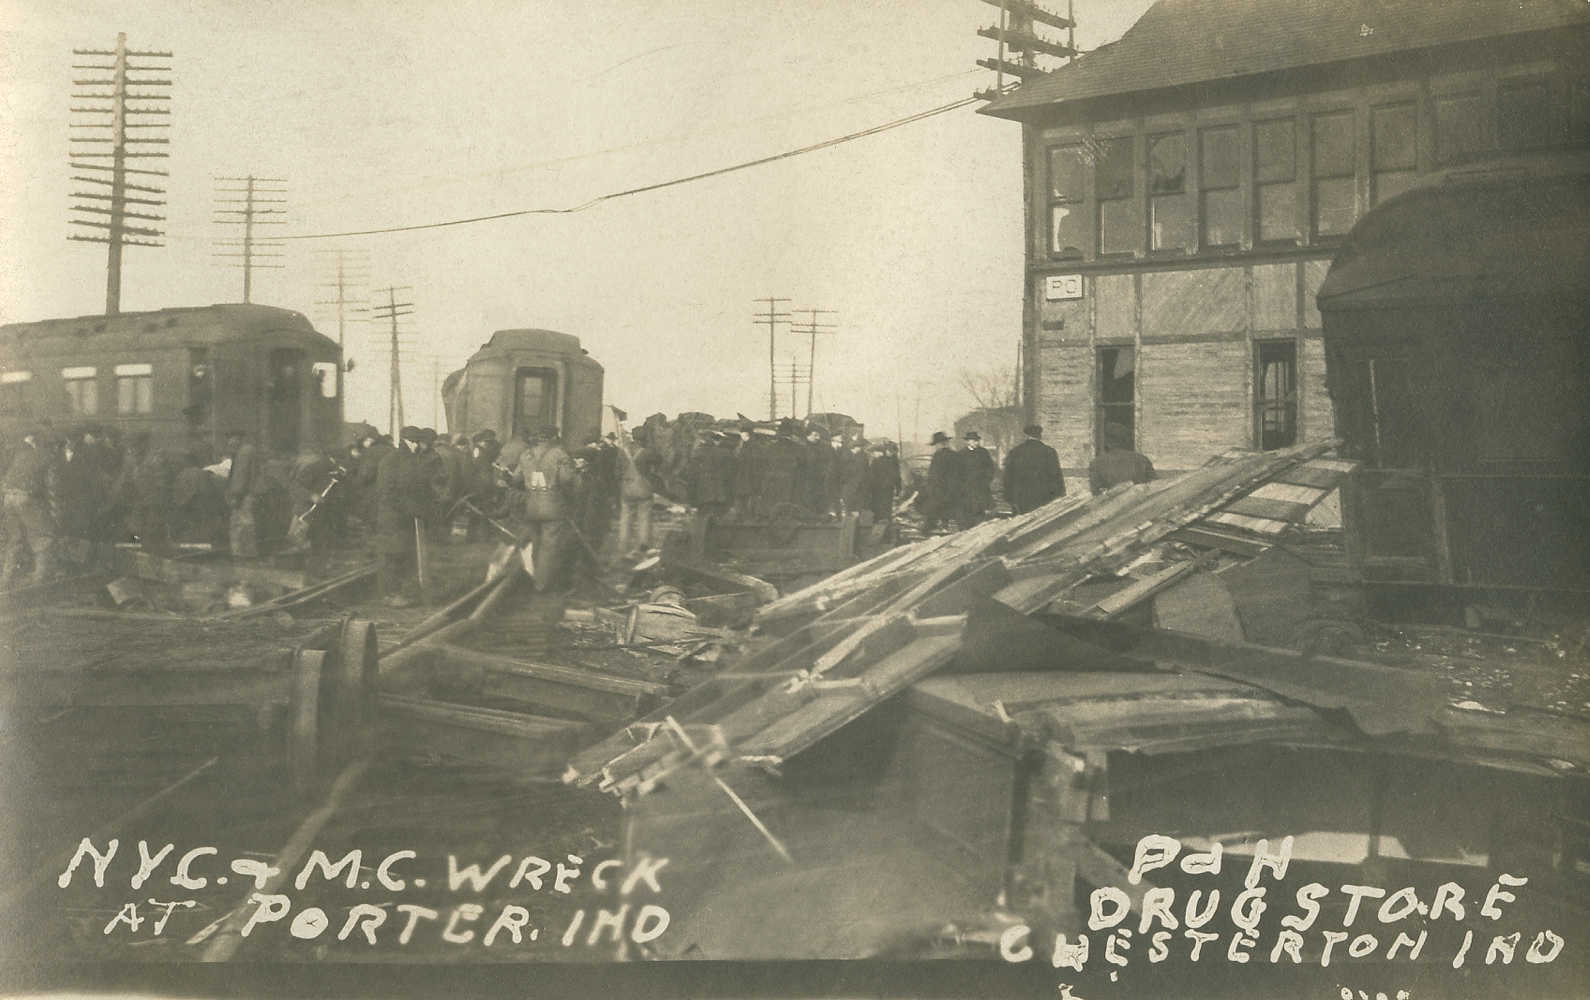 1921 Porter Railroad Accident